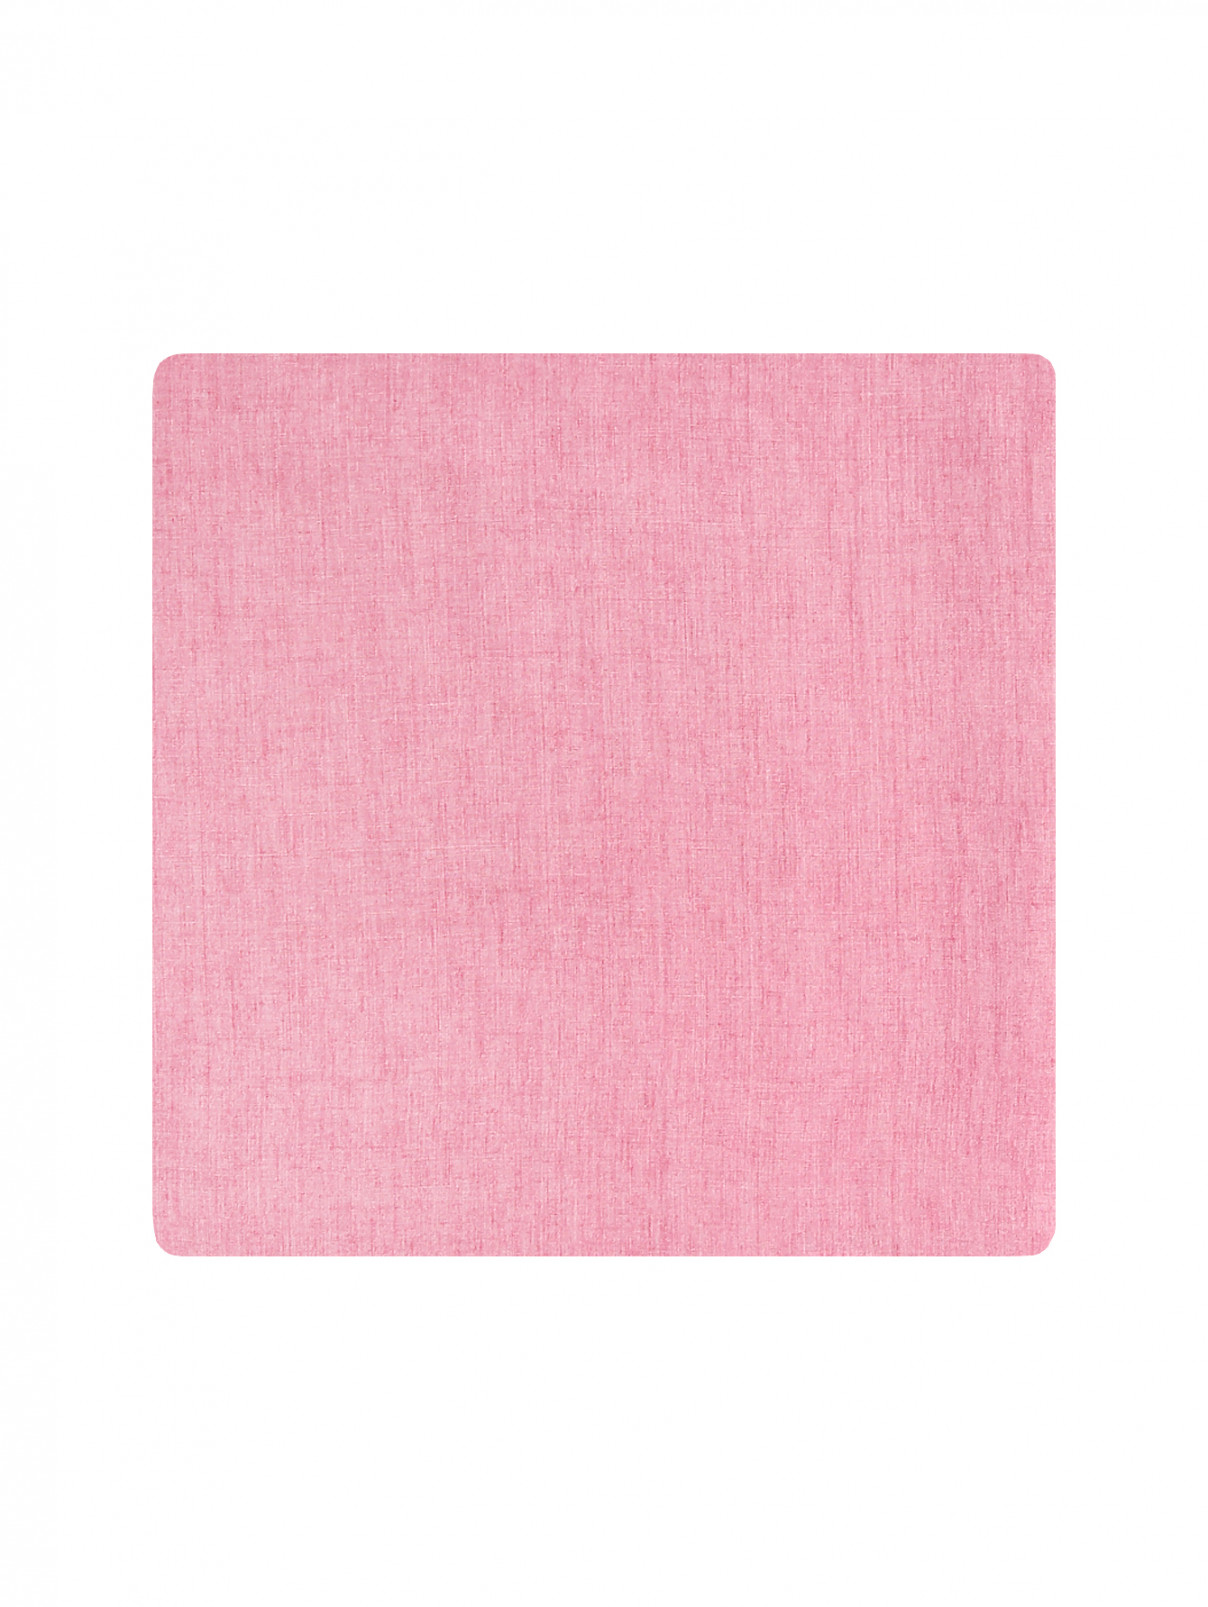 Широкий шарф изо льна Marina Rinaldi  –  Общий вид  – Цвет:  Розовый